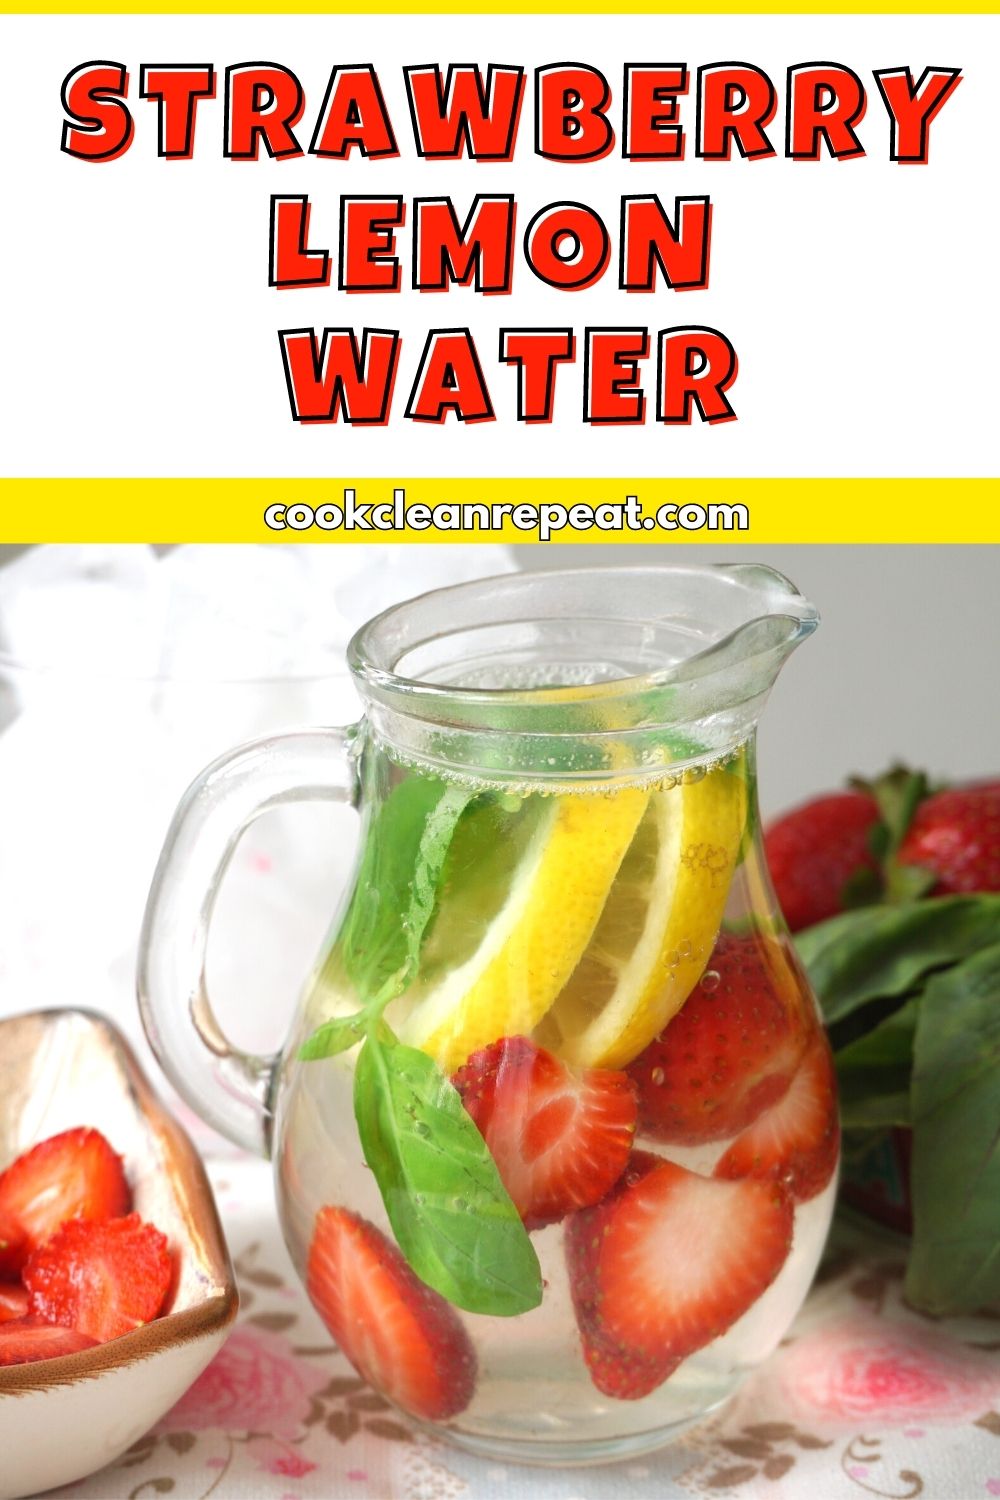 Pinterest image for Strawberry Lemon Water Recipe